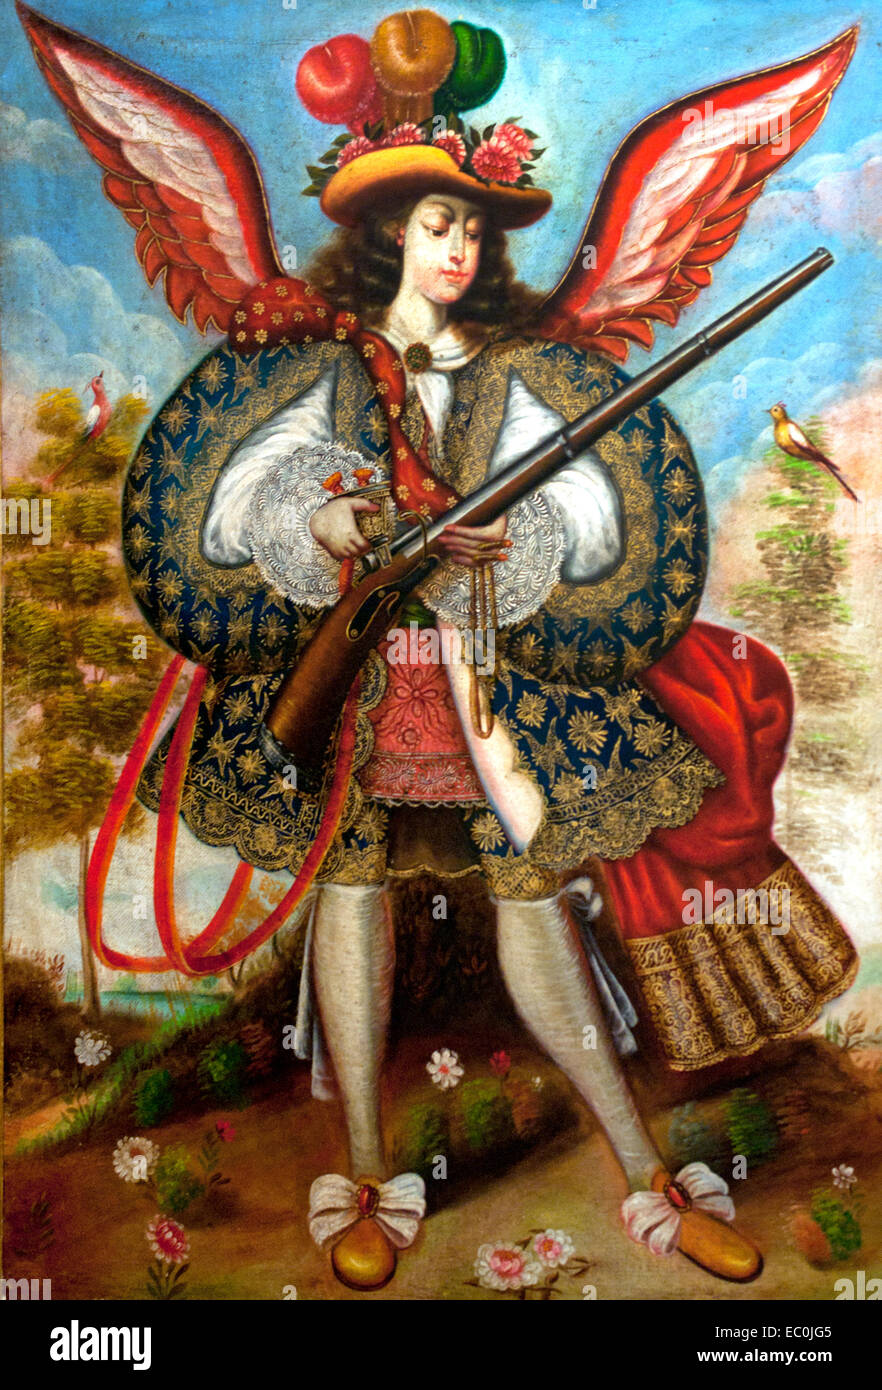 Copias Escuela Cuzqueña - kopiert Cuzco Schule - Cuzco Schule 18. Jahrhundert Spanien Spanisch (eine Ángel Arcabucero (arquebusier Angel) ist ein Engel mit einer Arkebuse (eine frühe Mündung-geladene Waffe) dargestellt statt das Schwert traditionell für kriegerische Engel, gekleidet in der Kleidung von jenem der spanischen Aristokraten. Der Stil entstand im Vizekönigreich Peru in der zweiten Hälfte des 17. Jahrhunderts und herrschte vor allem in der Schule von Cuzco. ) Stockfoto